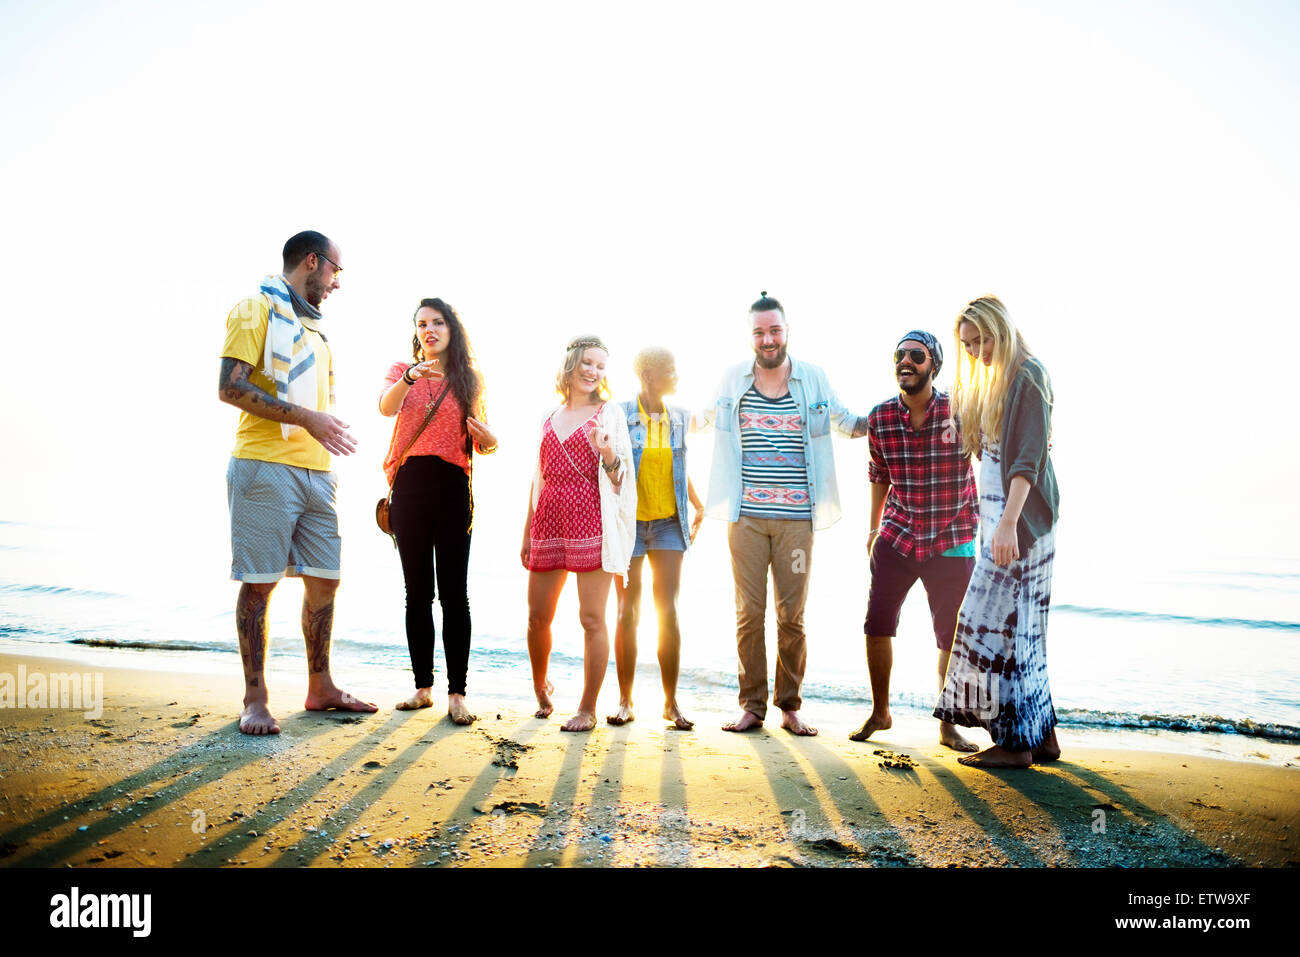 Diverse Beach Summer Friends Fun Bonding Concept Stock Photo